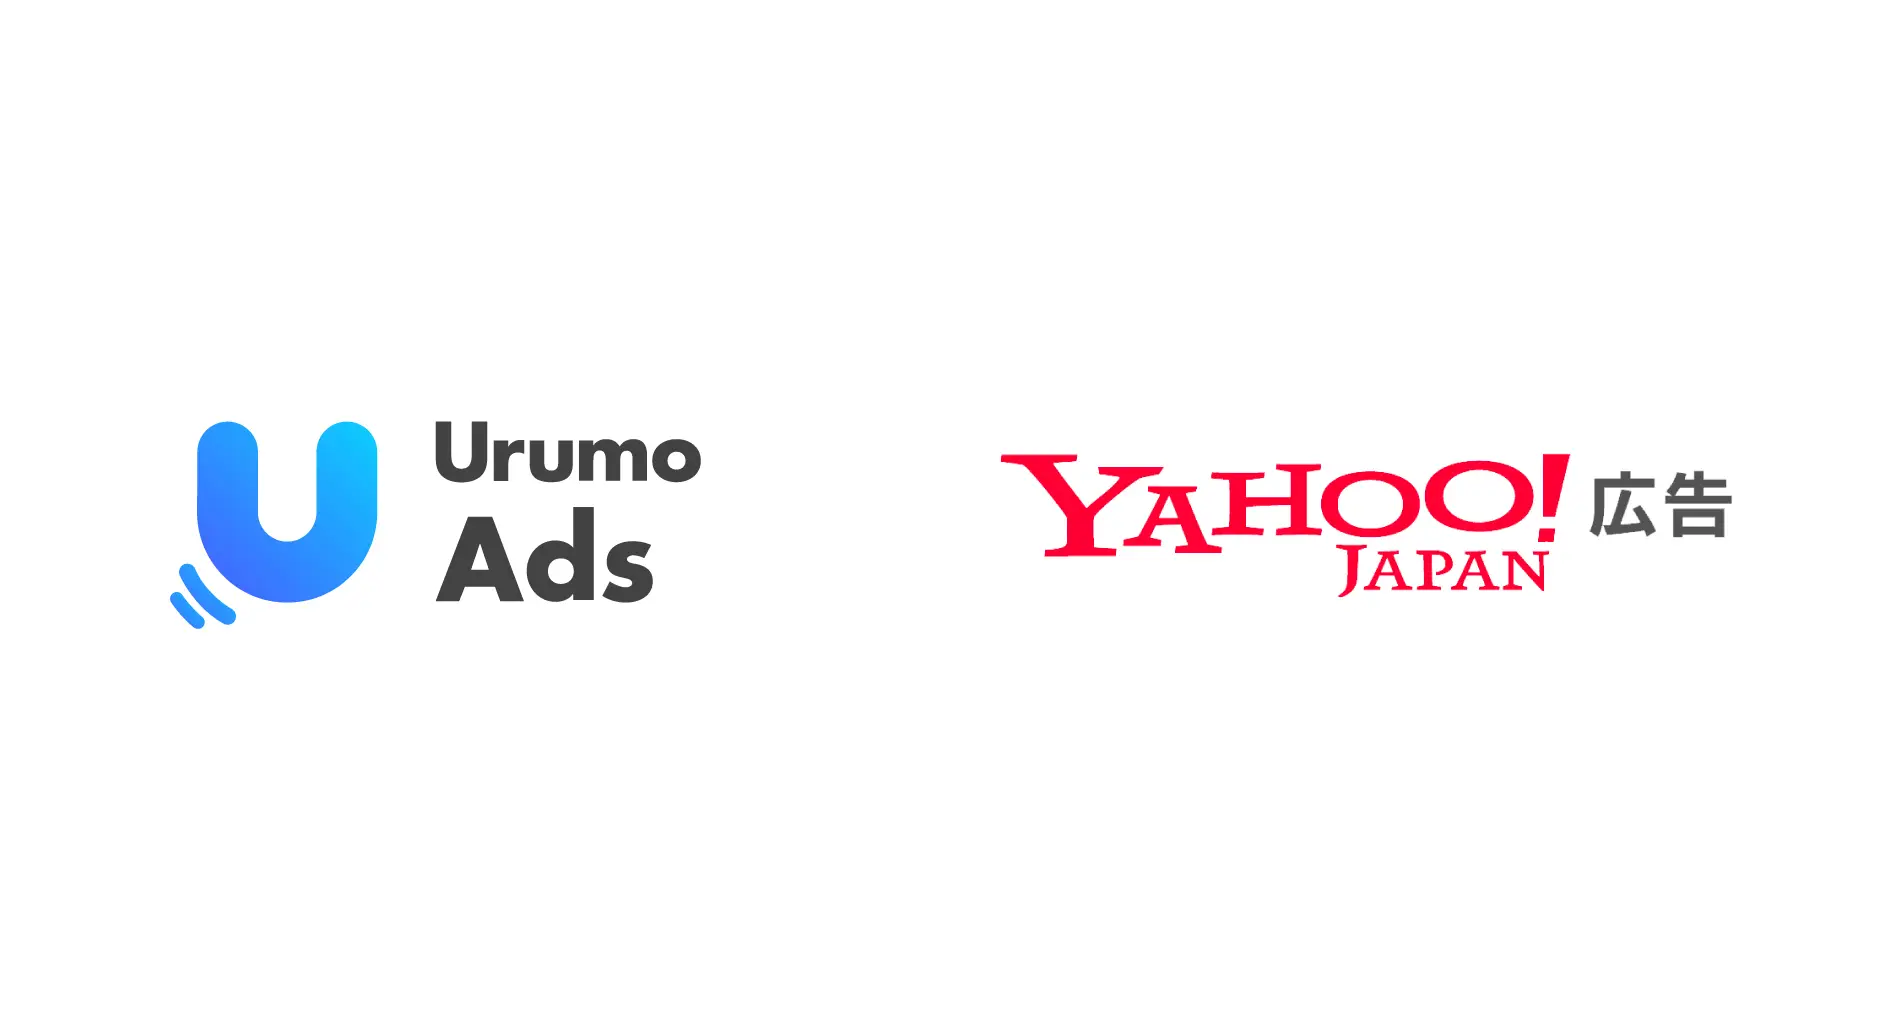 フェズ、購買検証が可能な広告ソリューション「Urumo Ads」にて「Yahoo!広告」と連携開始